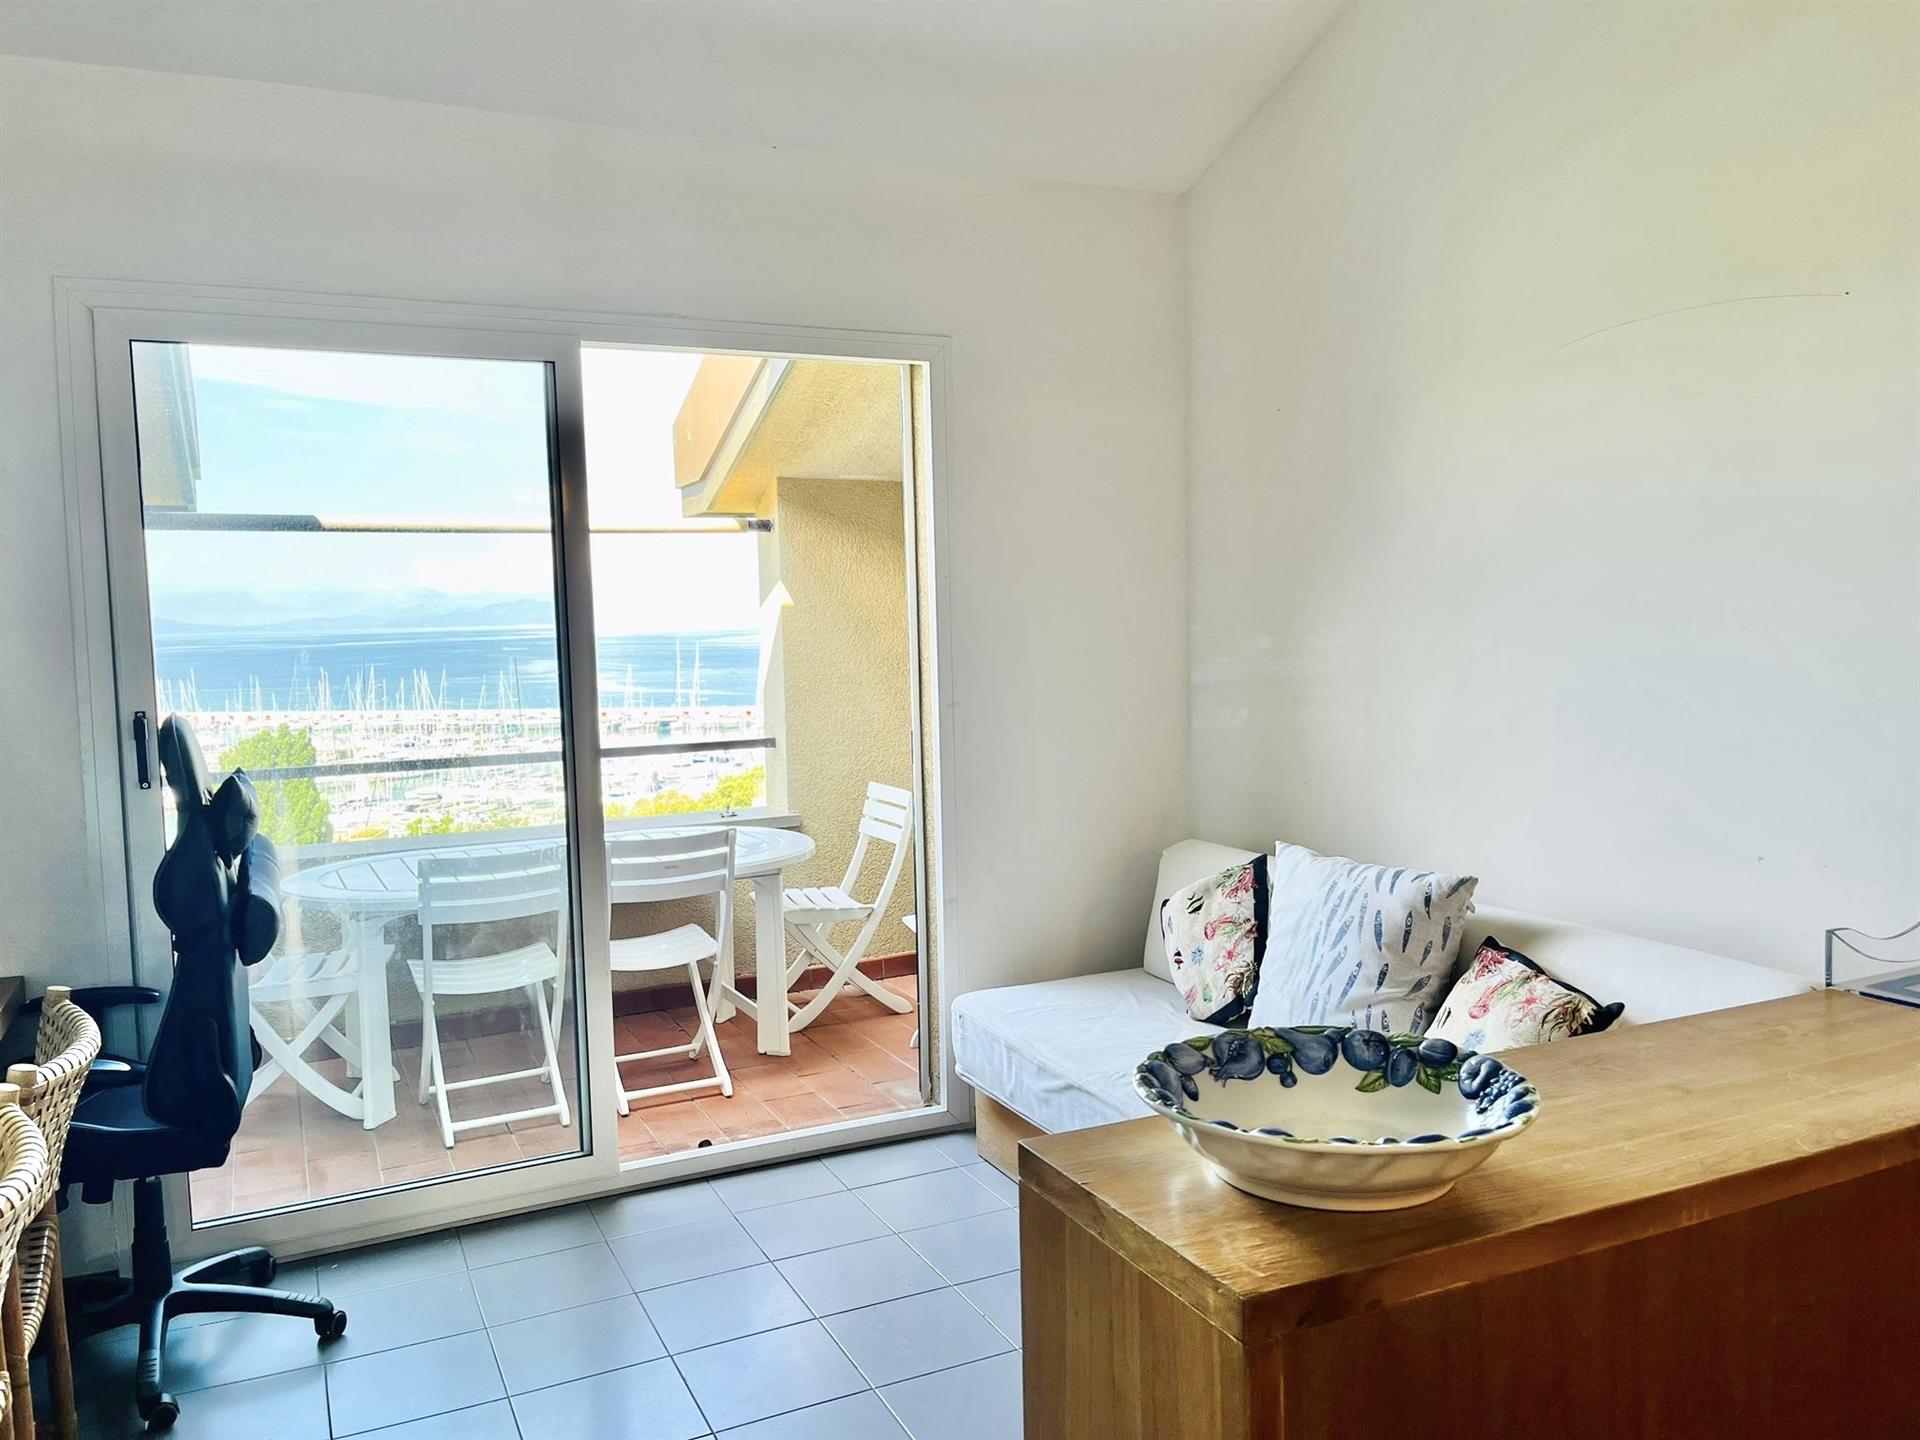 Appartement moderne avec vue imprenable sur la mer à Punta Ala